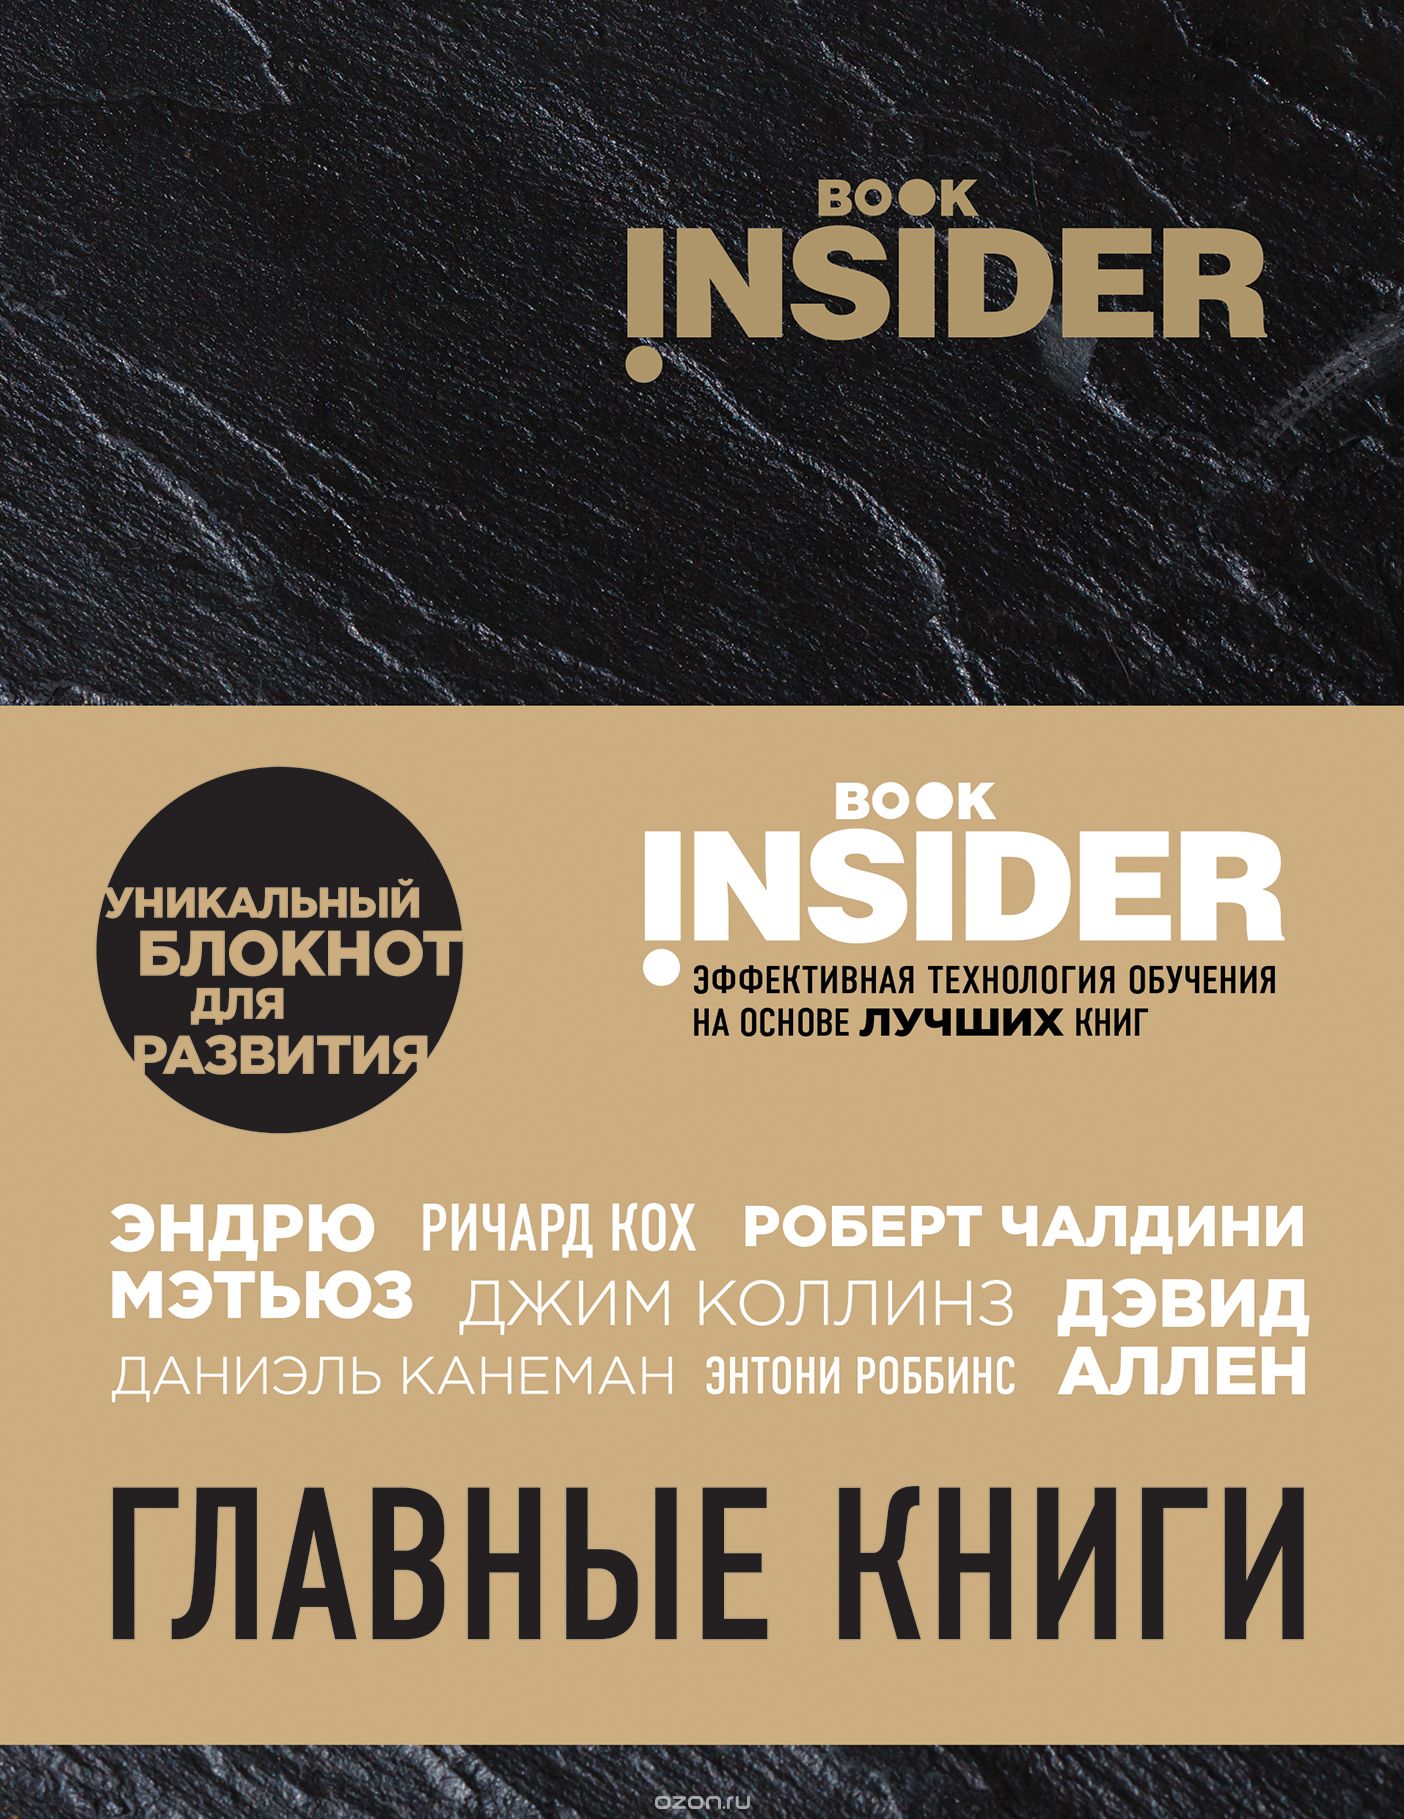 Скачать книгу "Book Insider. Главные книги, Ицхак Пинтосевич, Григорий Аветов"